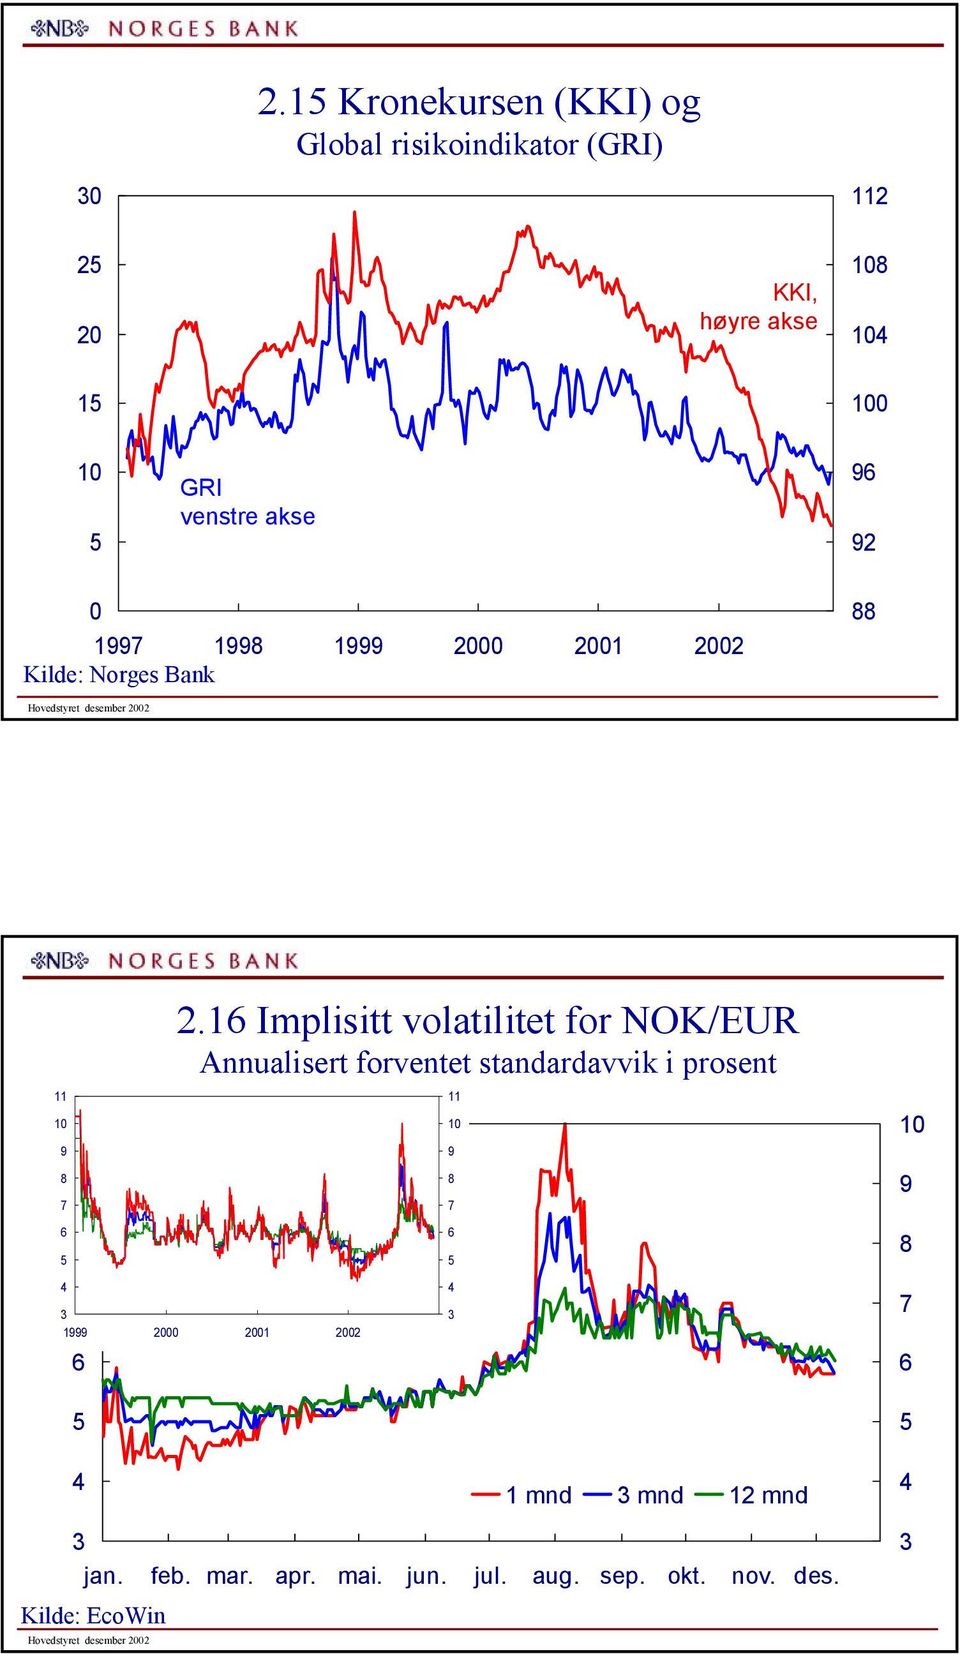 Implisitt volatilitet for NOK/EUR Annualisert forventet standardavvik i